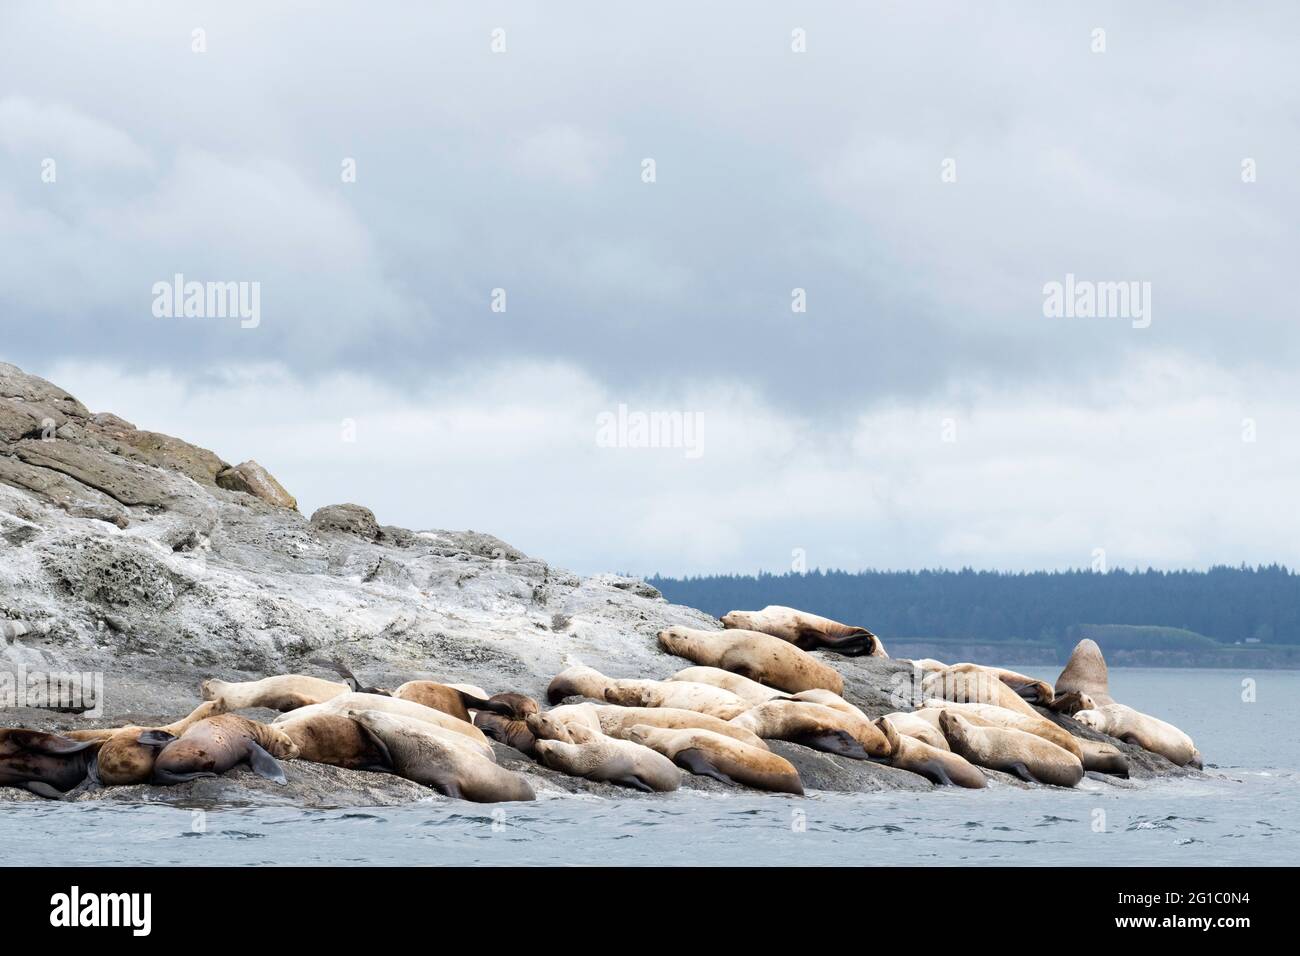 Die Kolonie der Steller Seelöwen ruht an der felsigen Küste der Insel Spieden auf den San Juan Islands, Washington, Pazifischer Nordwesten Stockfoto